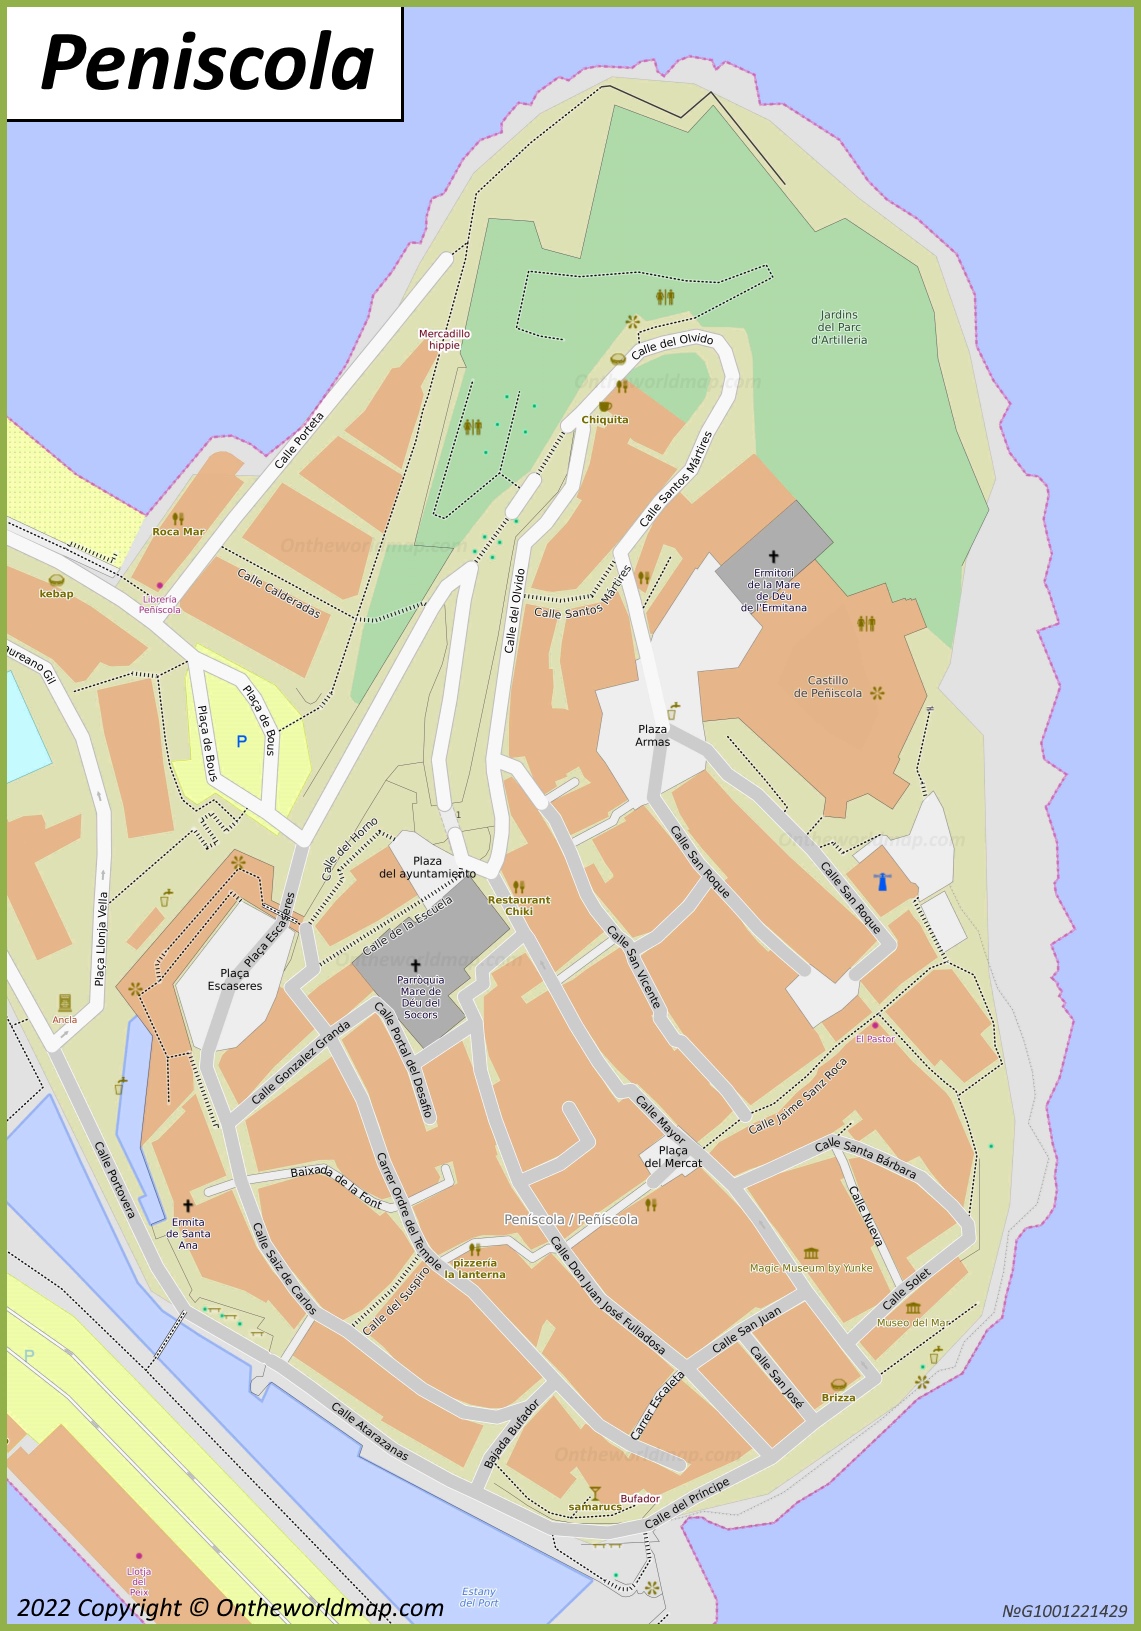 Mapa de la ciudad alta de Peñíscola